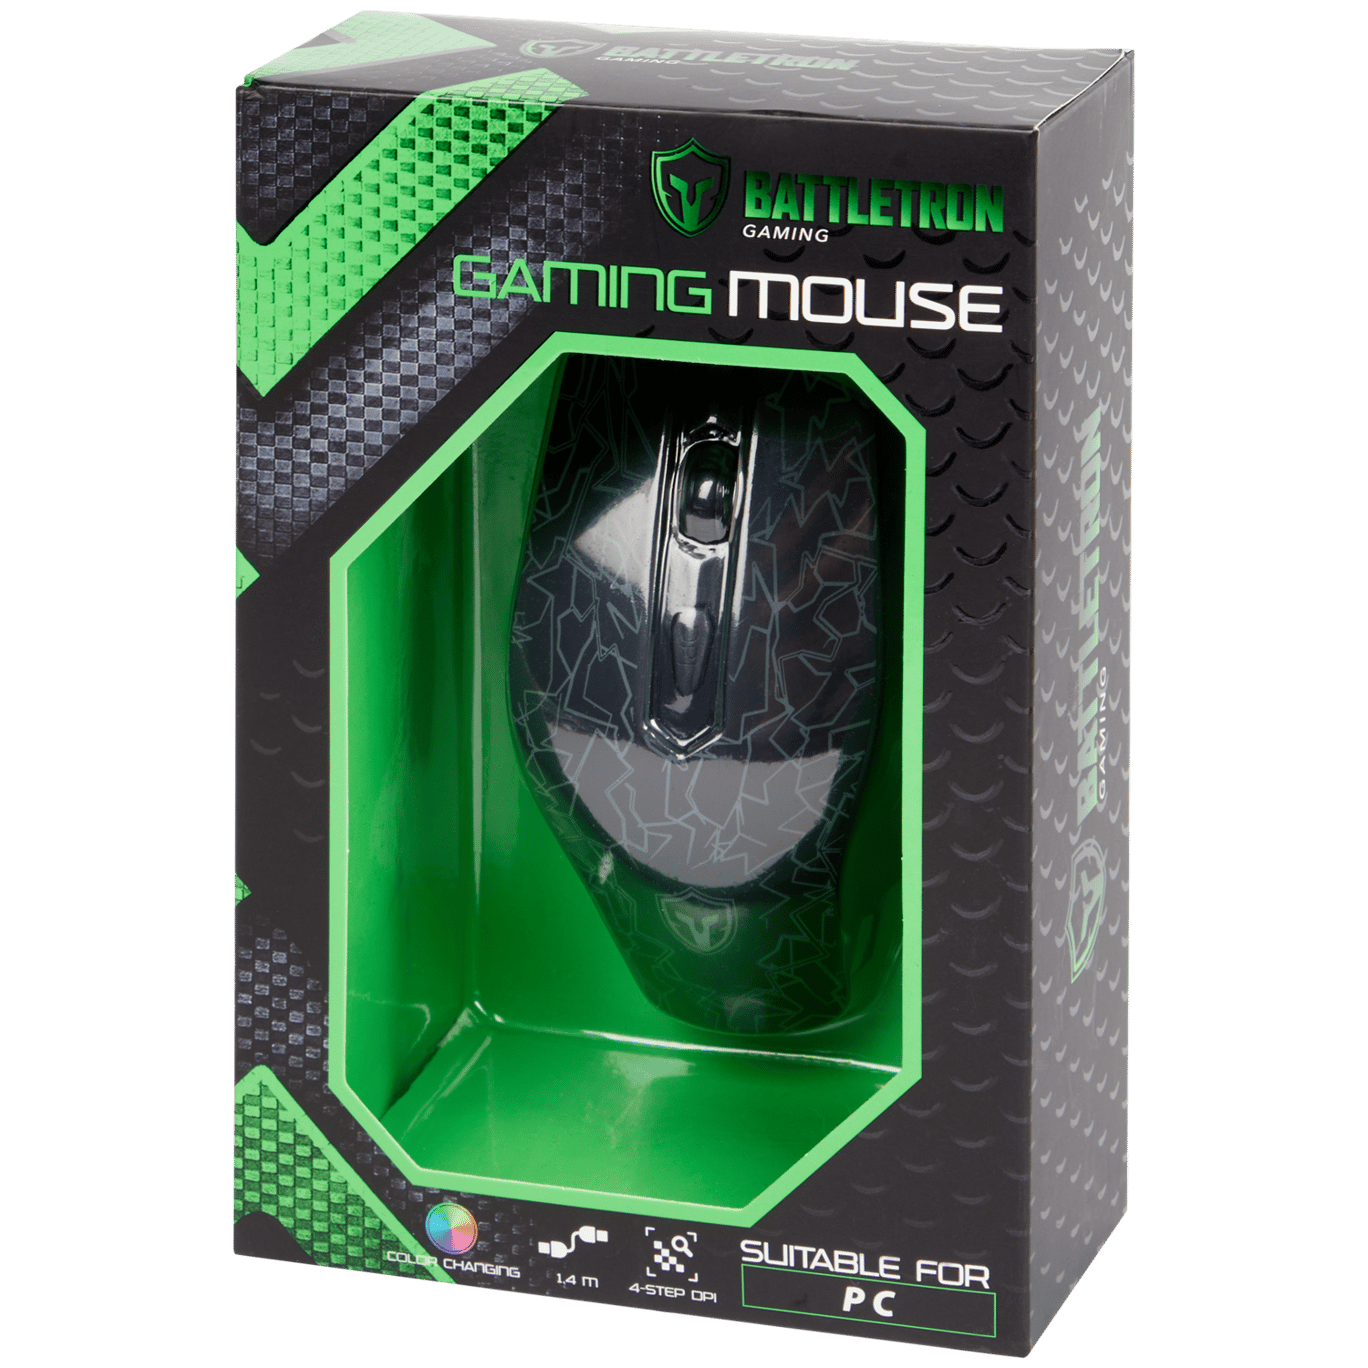 Mouse da gaming Battletron